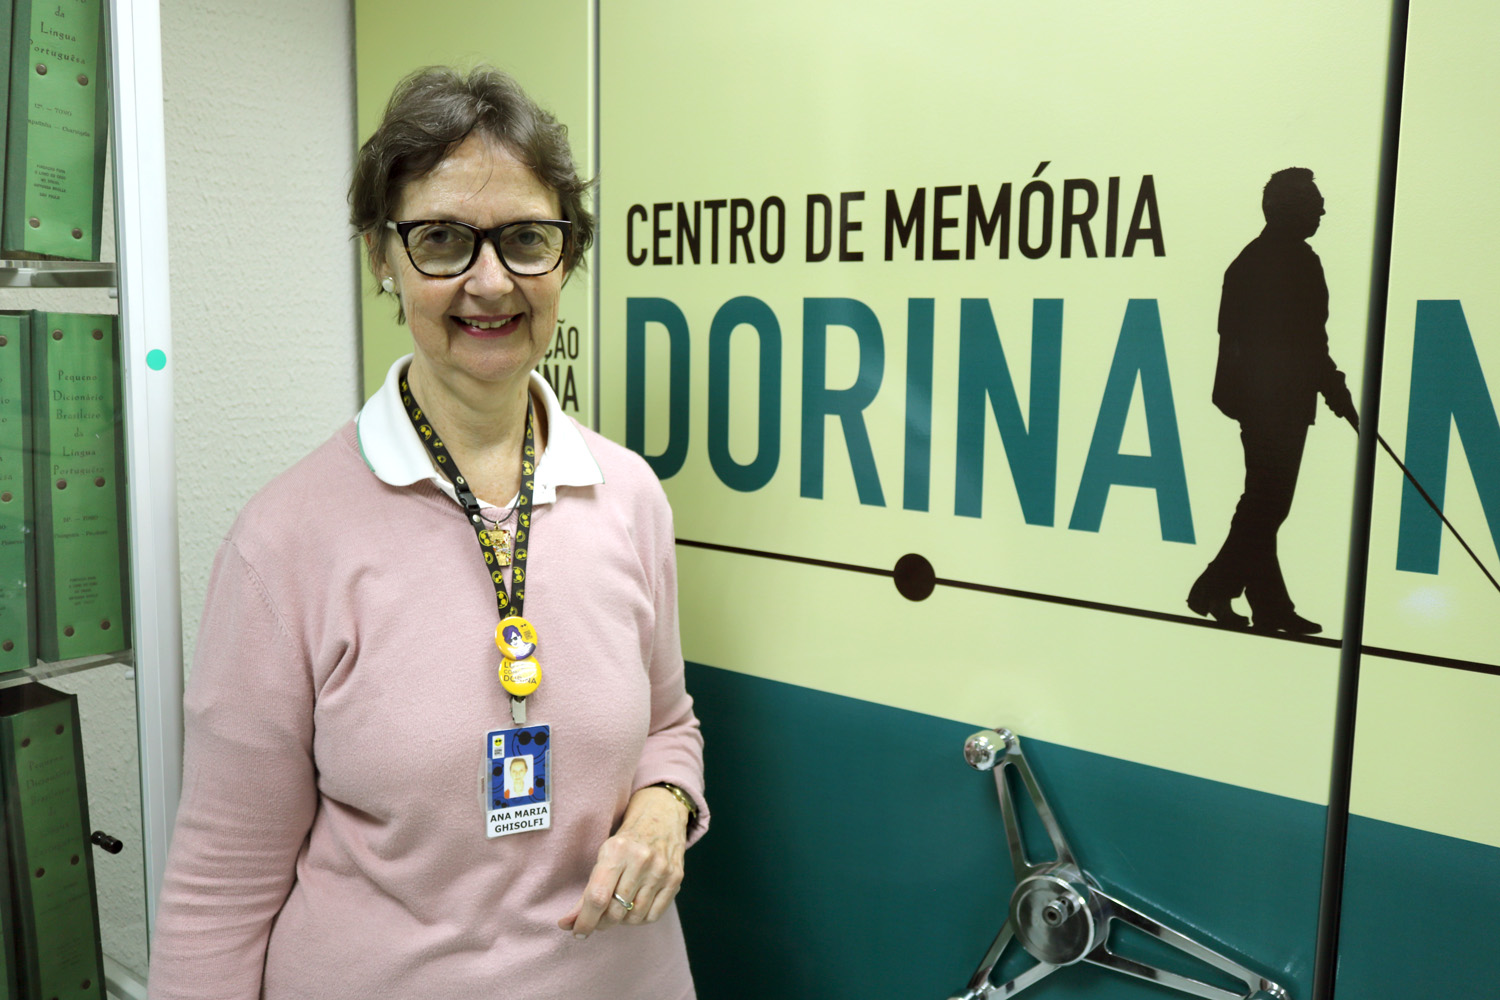 Descrição da imagem: Foto de Ana no Centro de memória da Fundação Dorina. Ela está olhando para foto e sorrindo. Ao fundo: Centro de Memória Dorina.